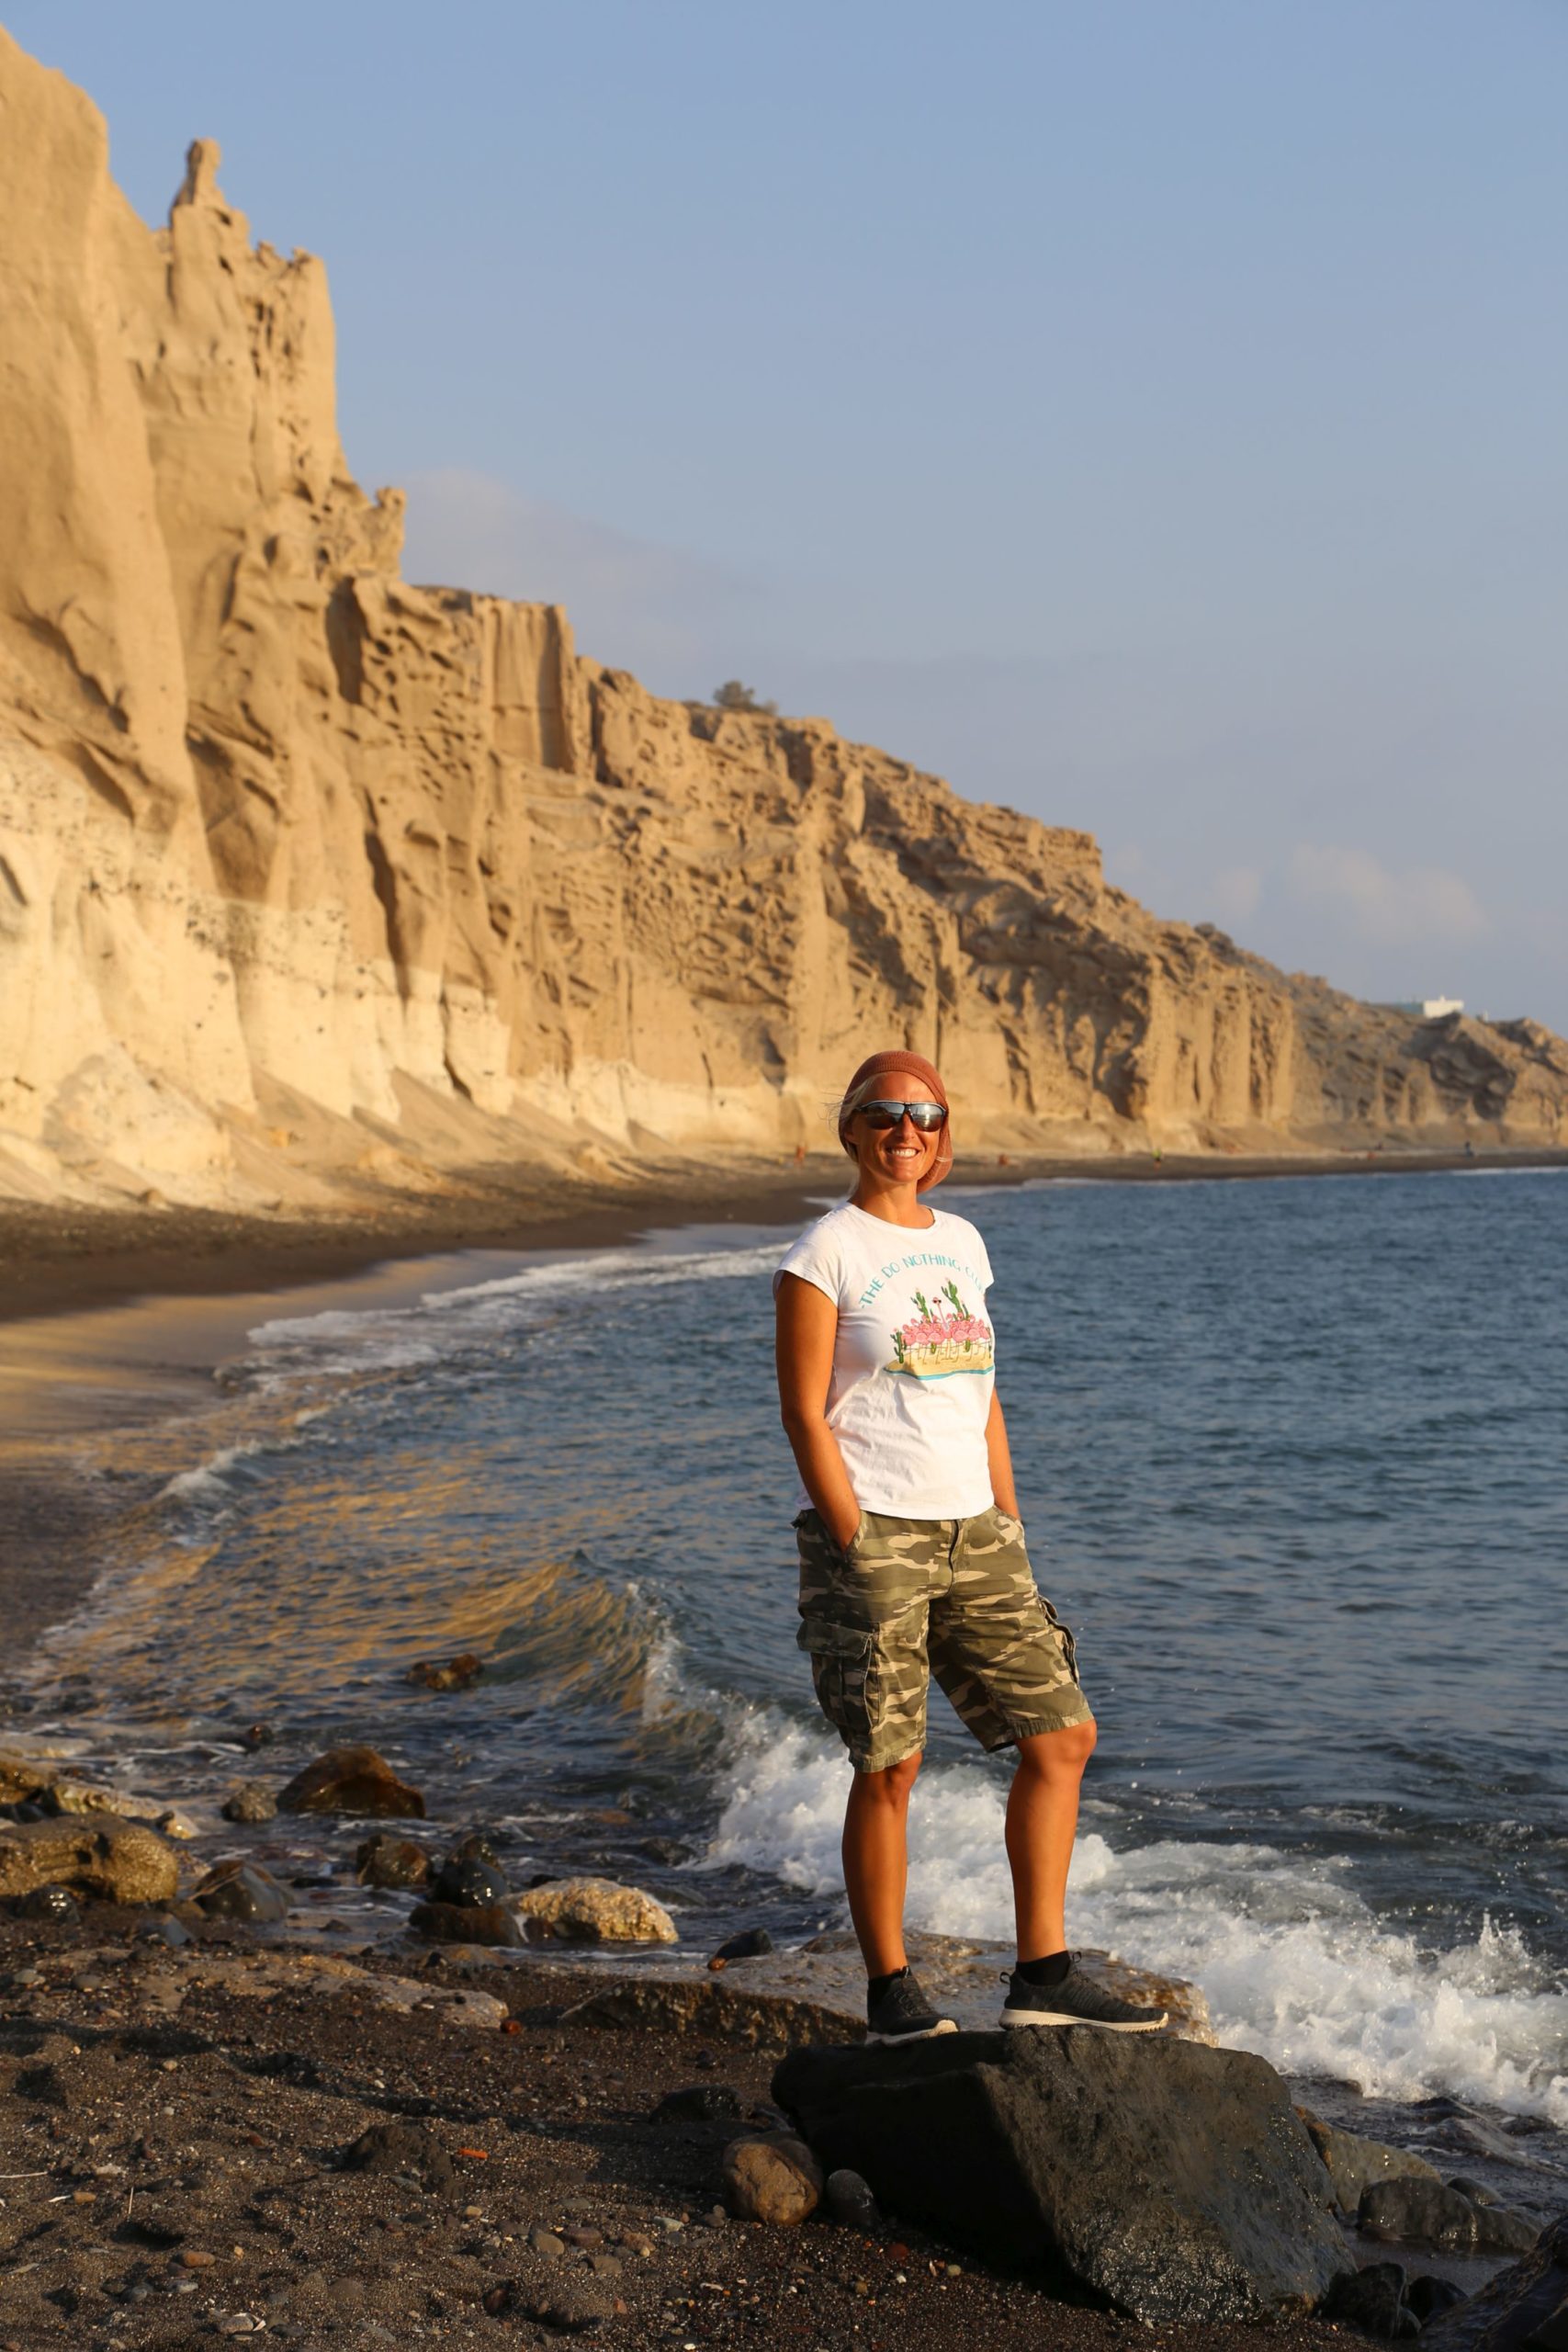 Am Theros Strand ich einen Lieblingsort fand - Felsen, Meer, Panorama, Personen, Sandstein, Sandsteinformationen, Steilküste, Strand, Theros Beach - WEISSINGER Sofia - (Vlychada, Ia, , Griechenland)